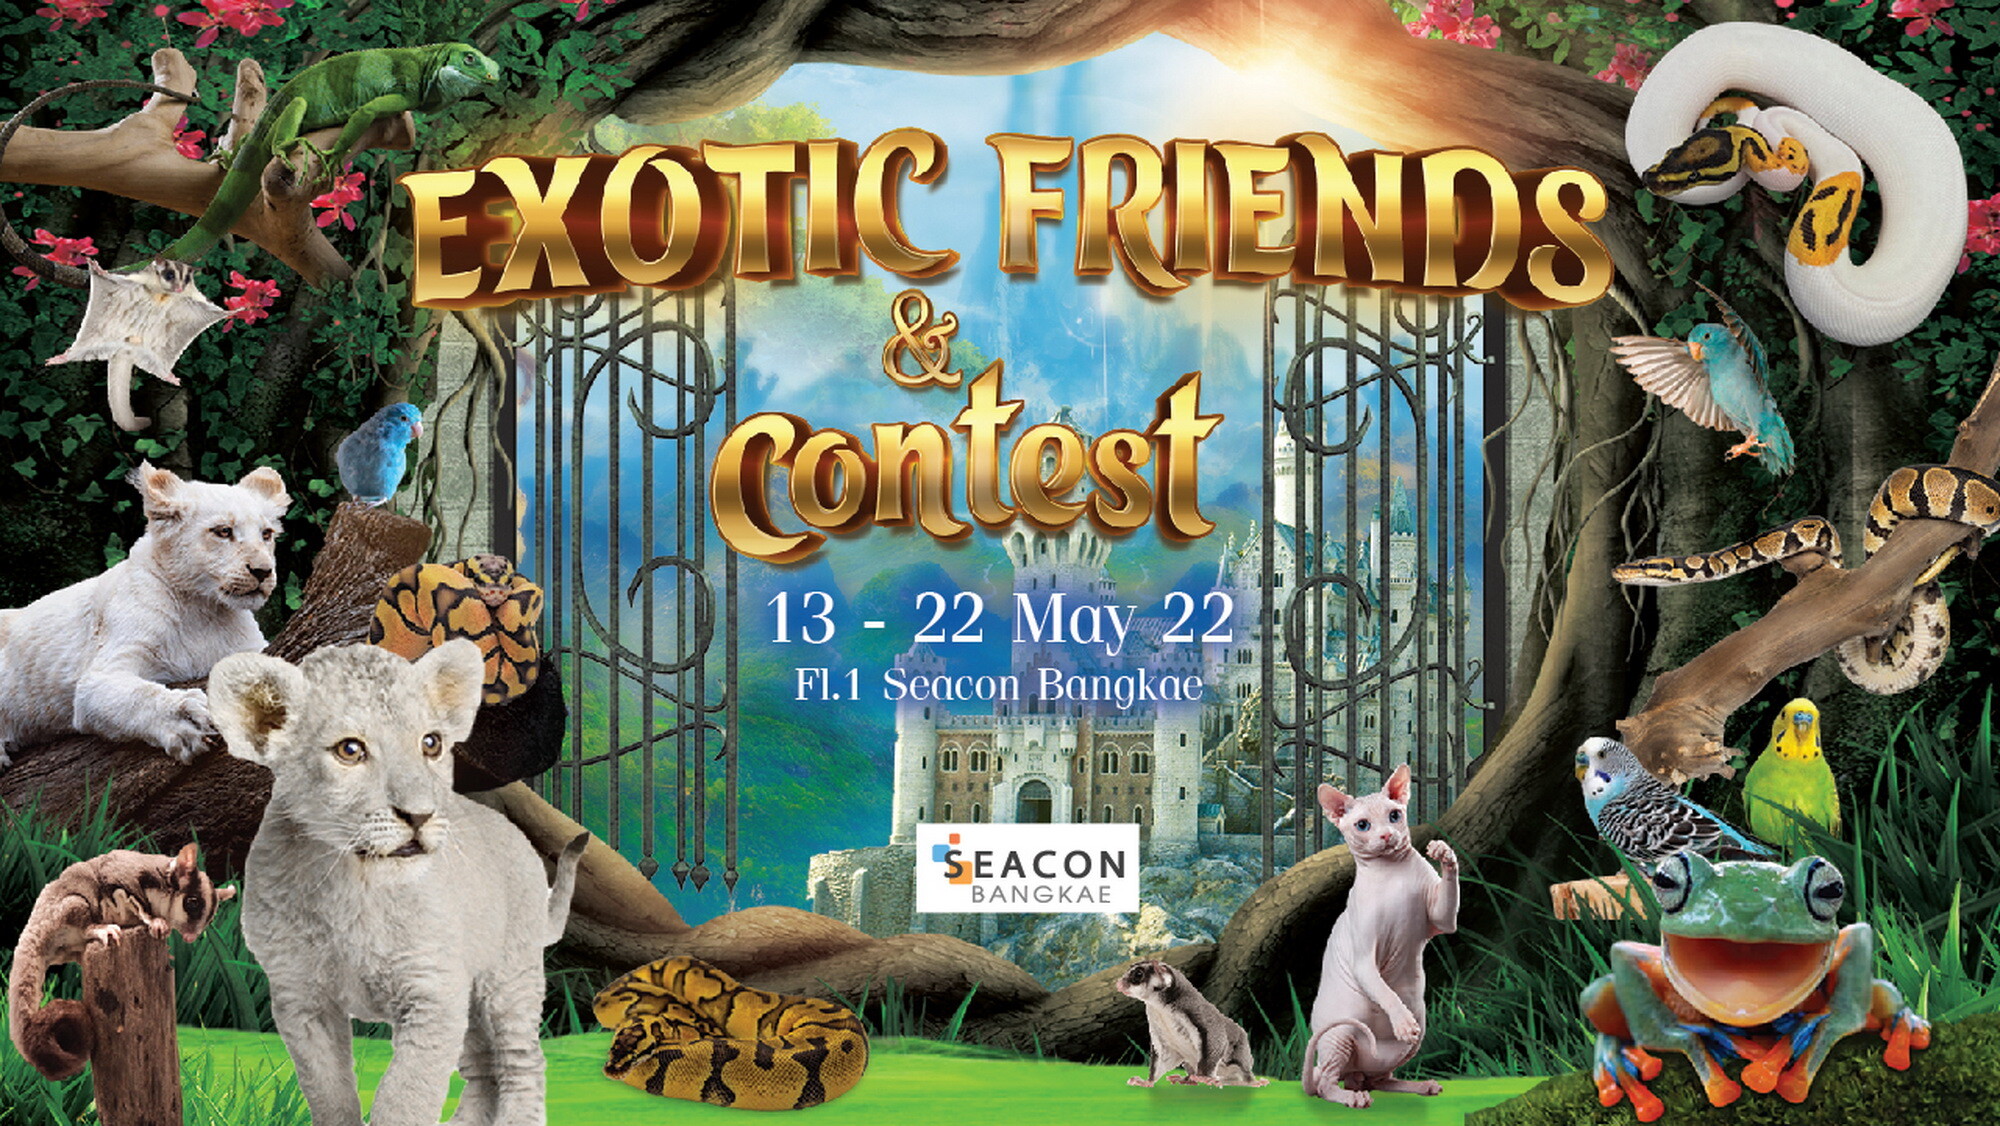 ครั้งแรกในไทย! 13 - 22 พ.ค. นี้ ซีคอน บางแค จัดงาน EXOTIC FRIENDS & contest ประกวดสัตว์ EXOTIC มากสุดเป็นประวัติกาล